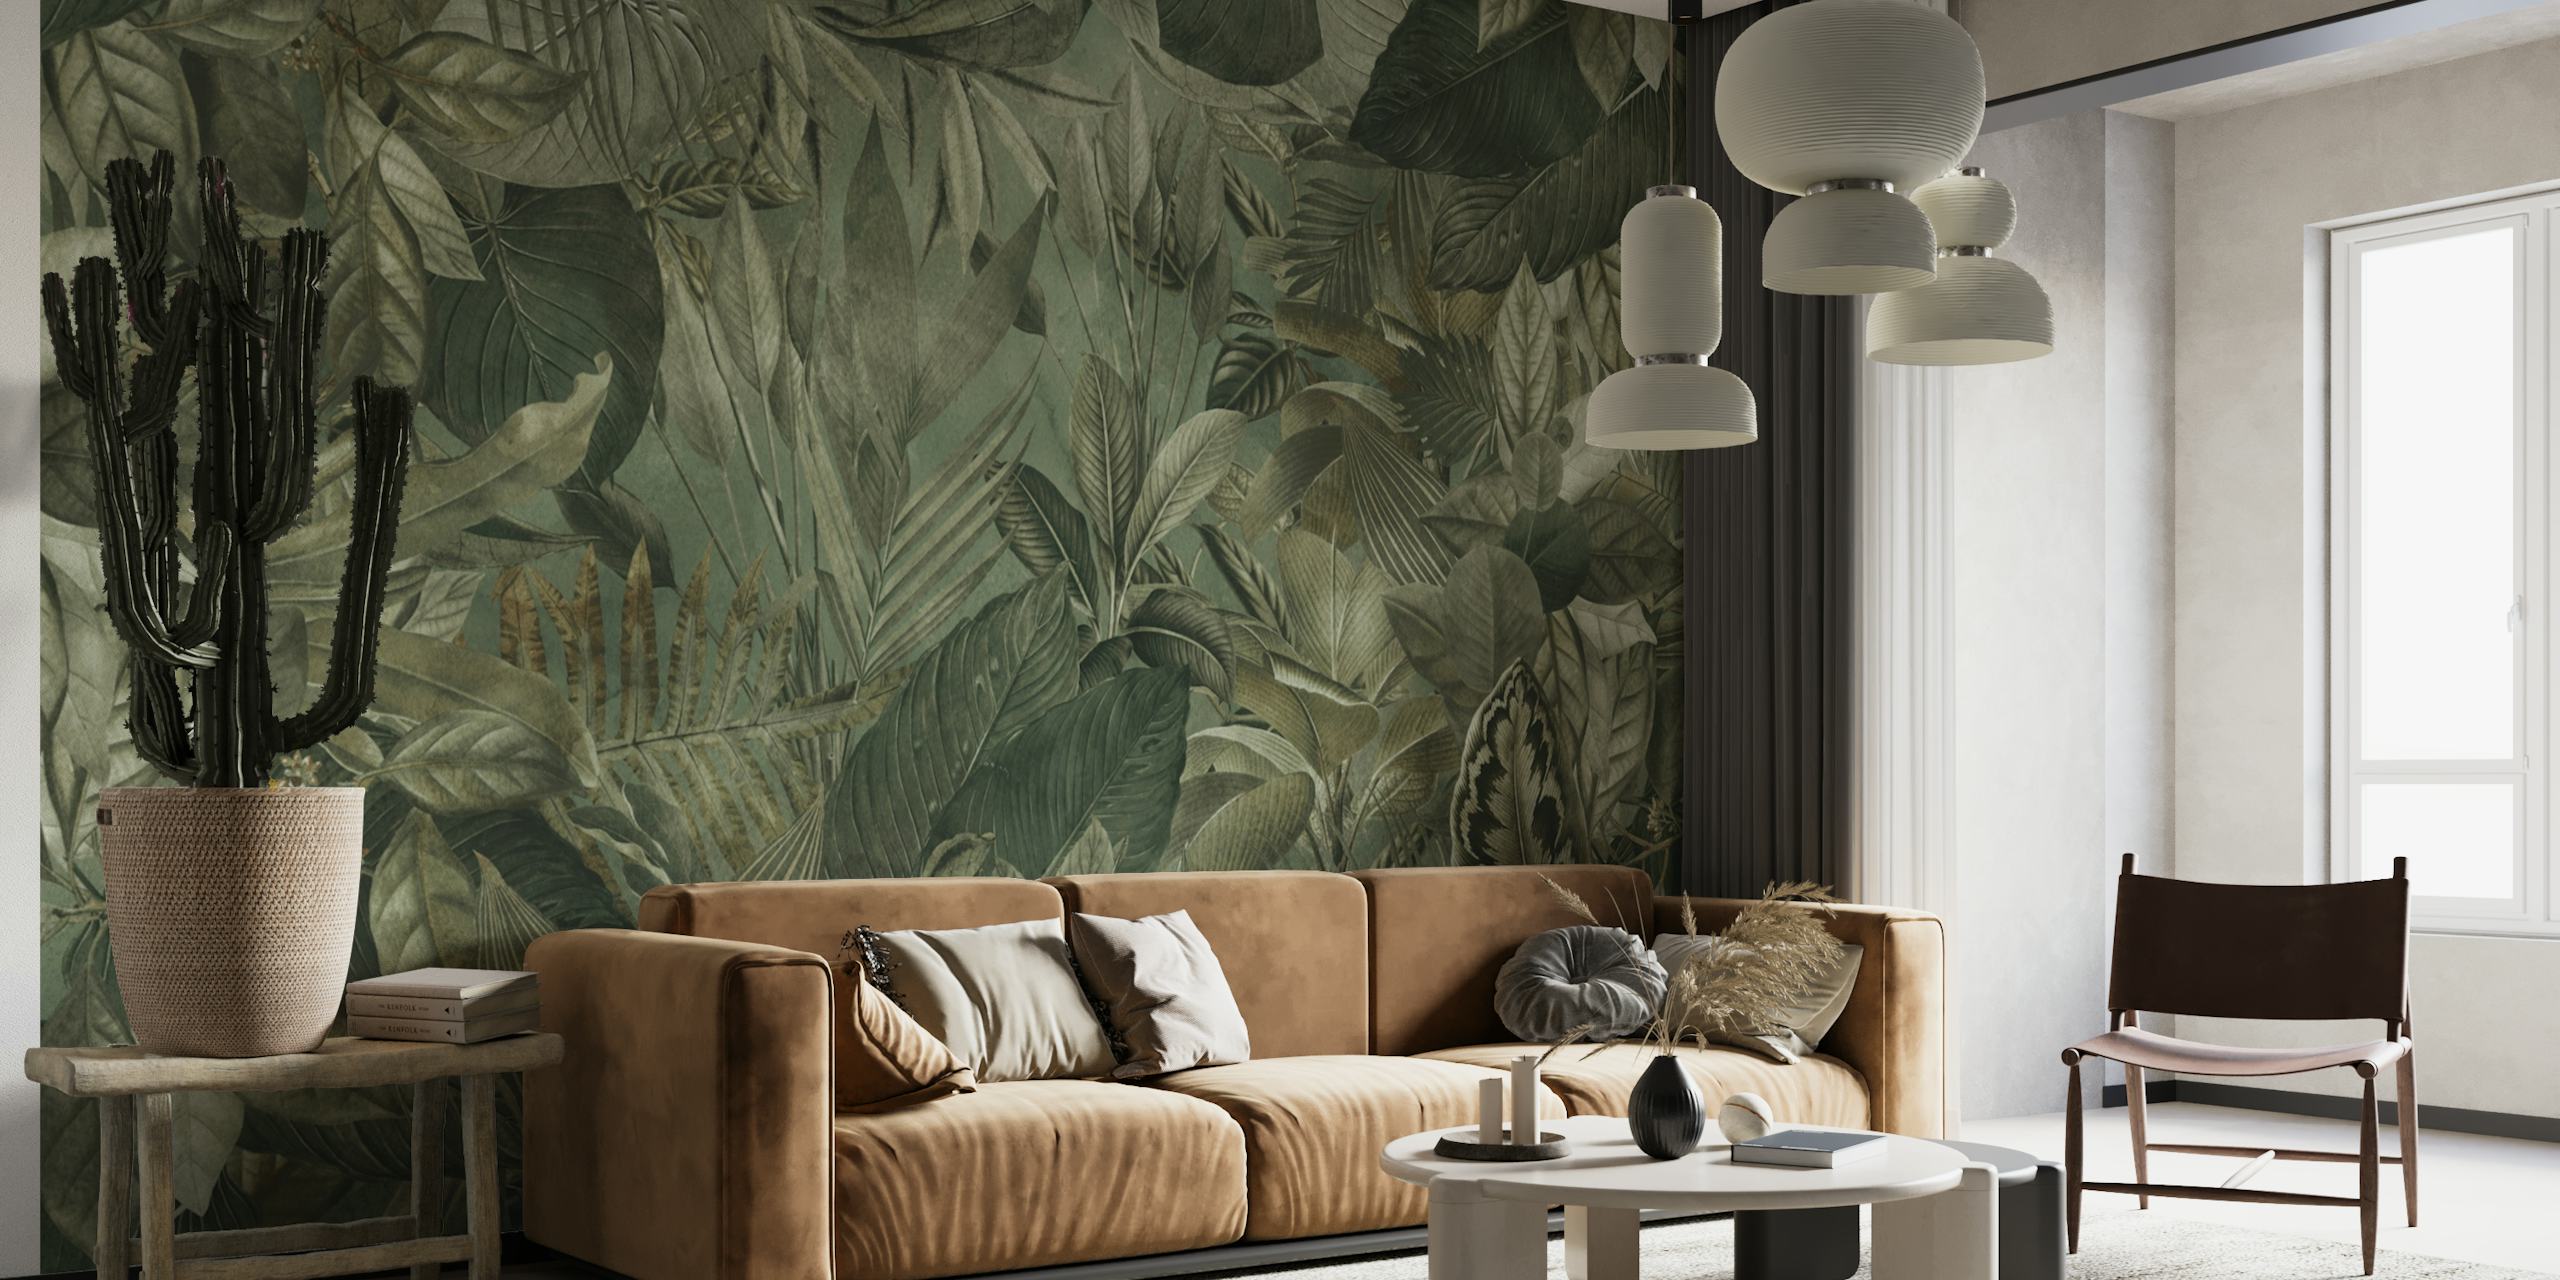 Nástěnná malba s motivem tropické džungle s olivově zeleným listím a botanickými prvky.